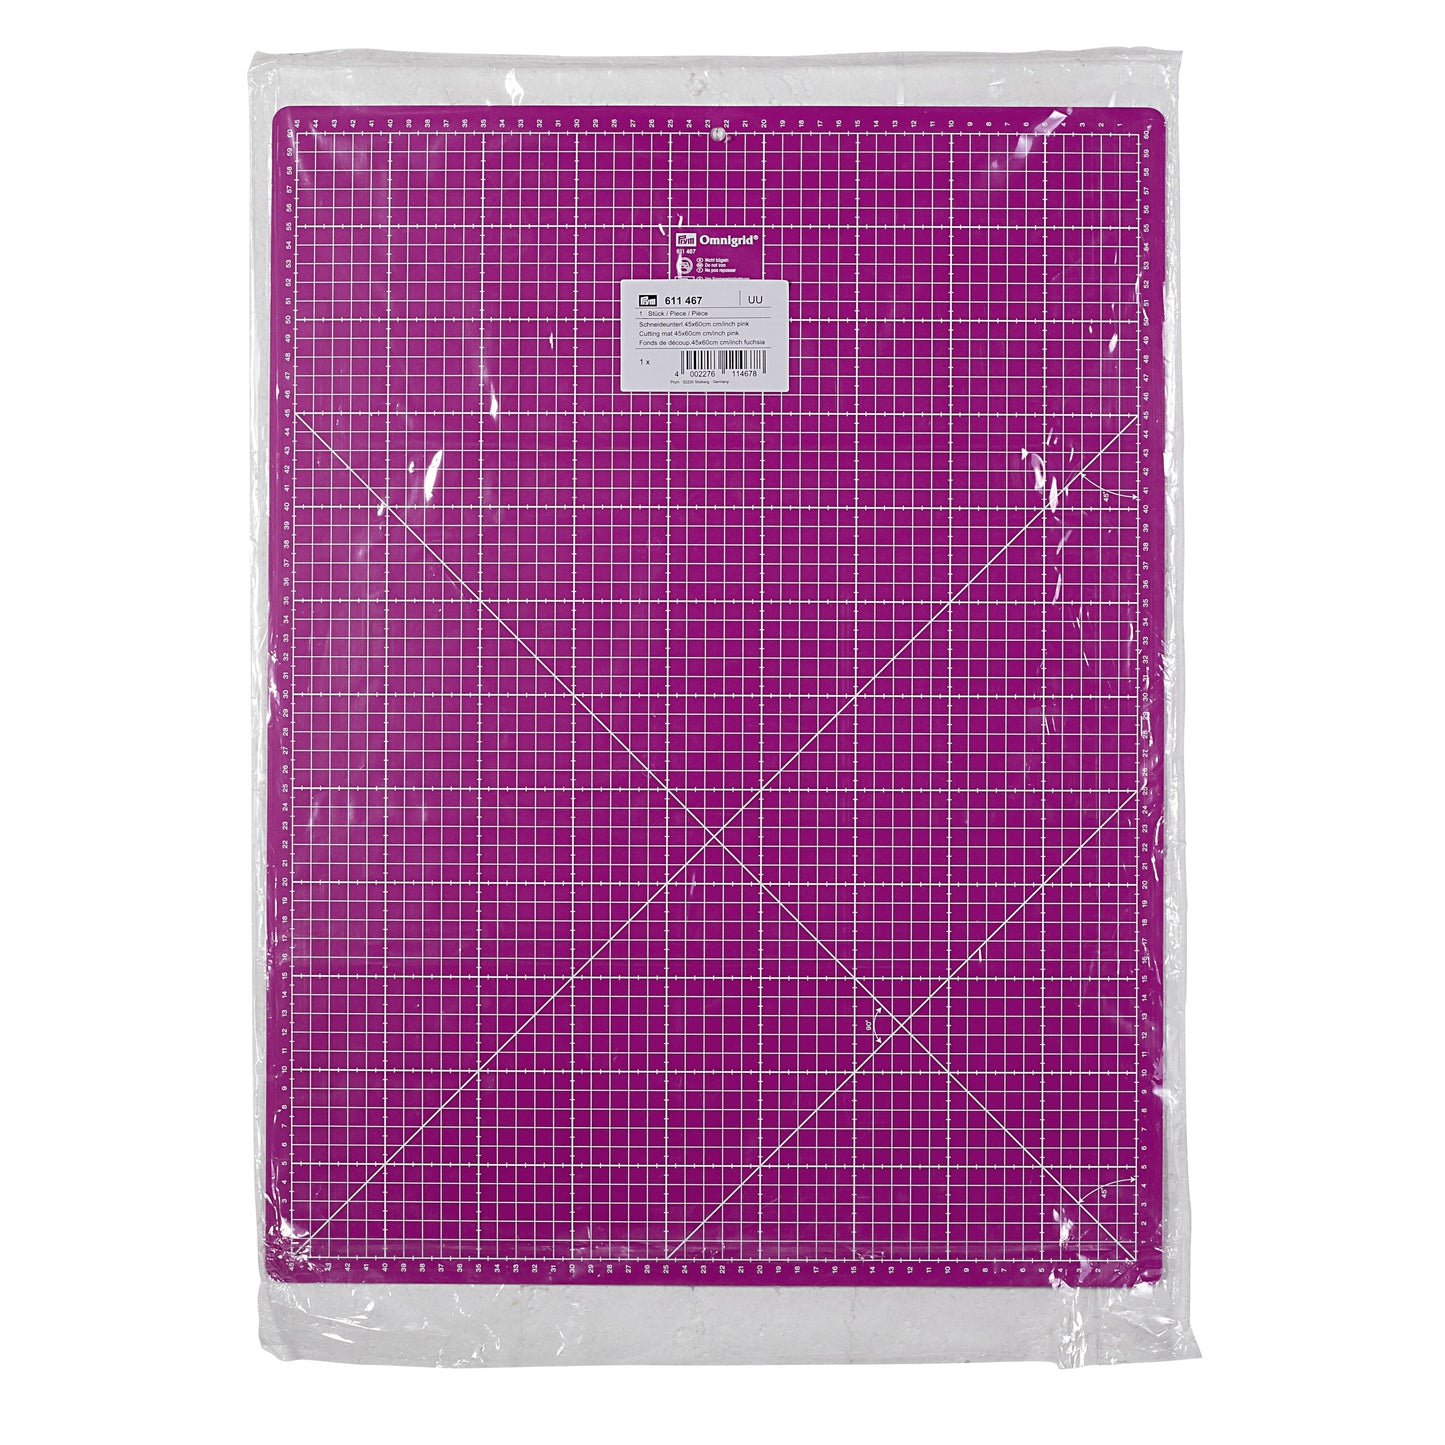 Schneideunterlage cm/inch-Einteilung, 45x60cm, pink